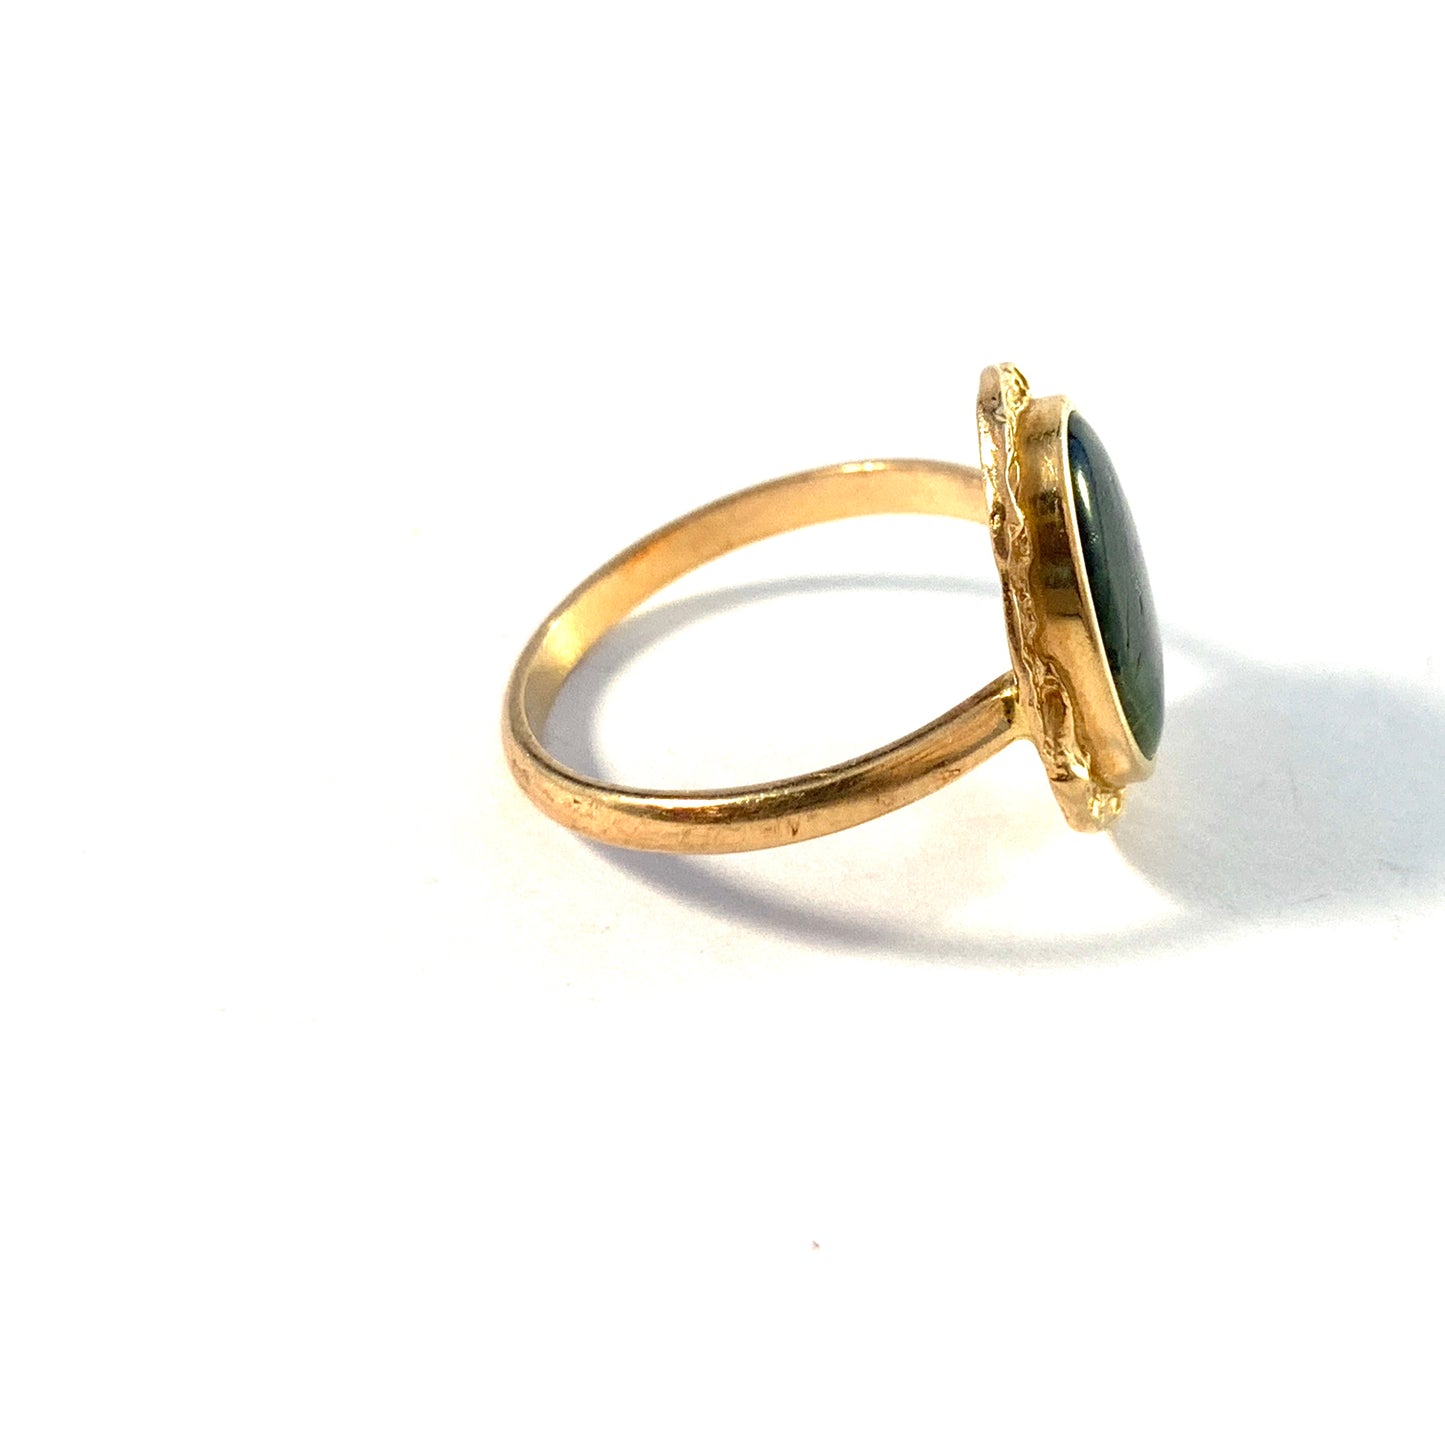 Bronsil, Sweden 1970s Vintage 18k Gold Abalone Ring.